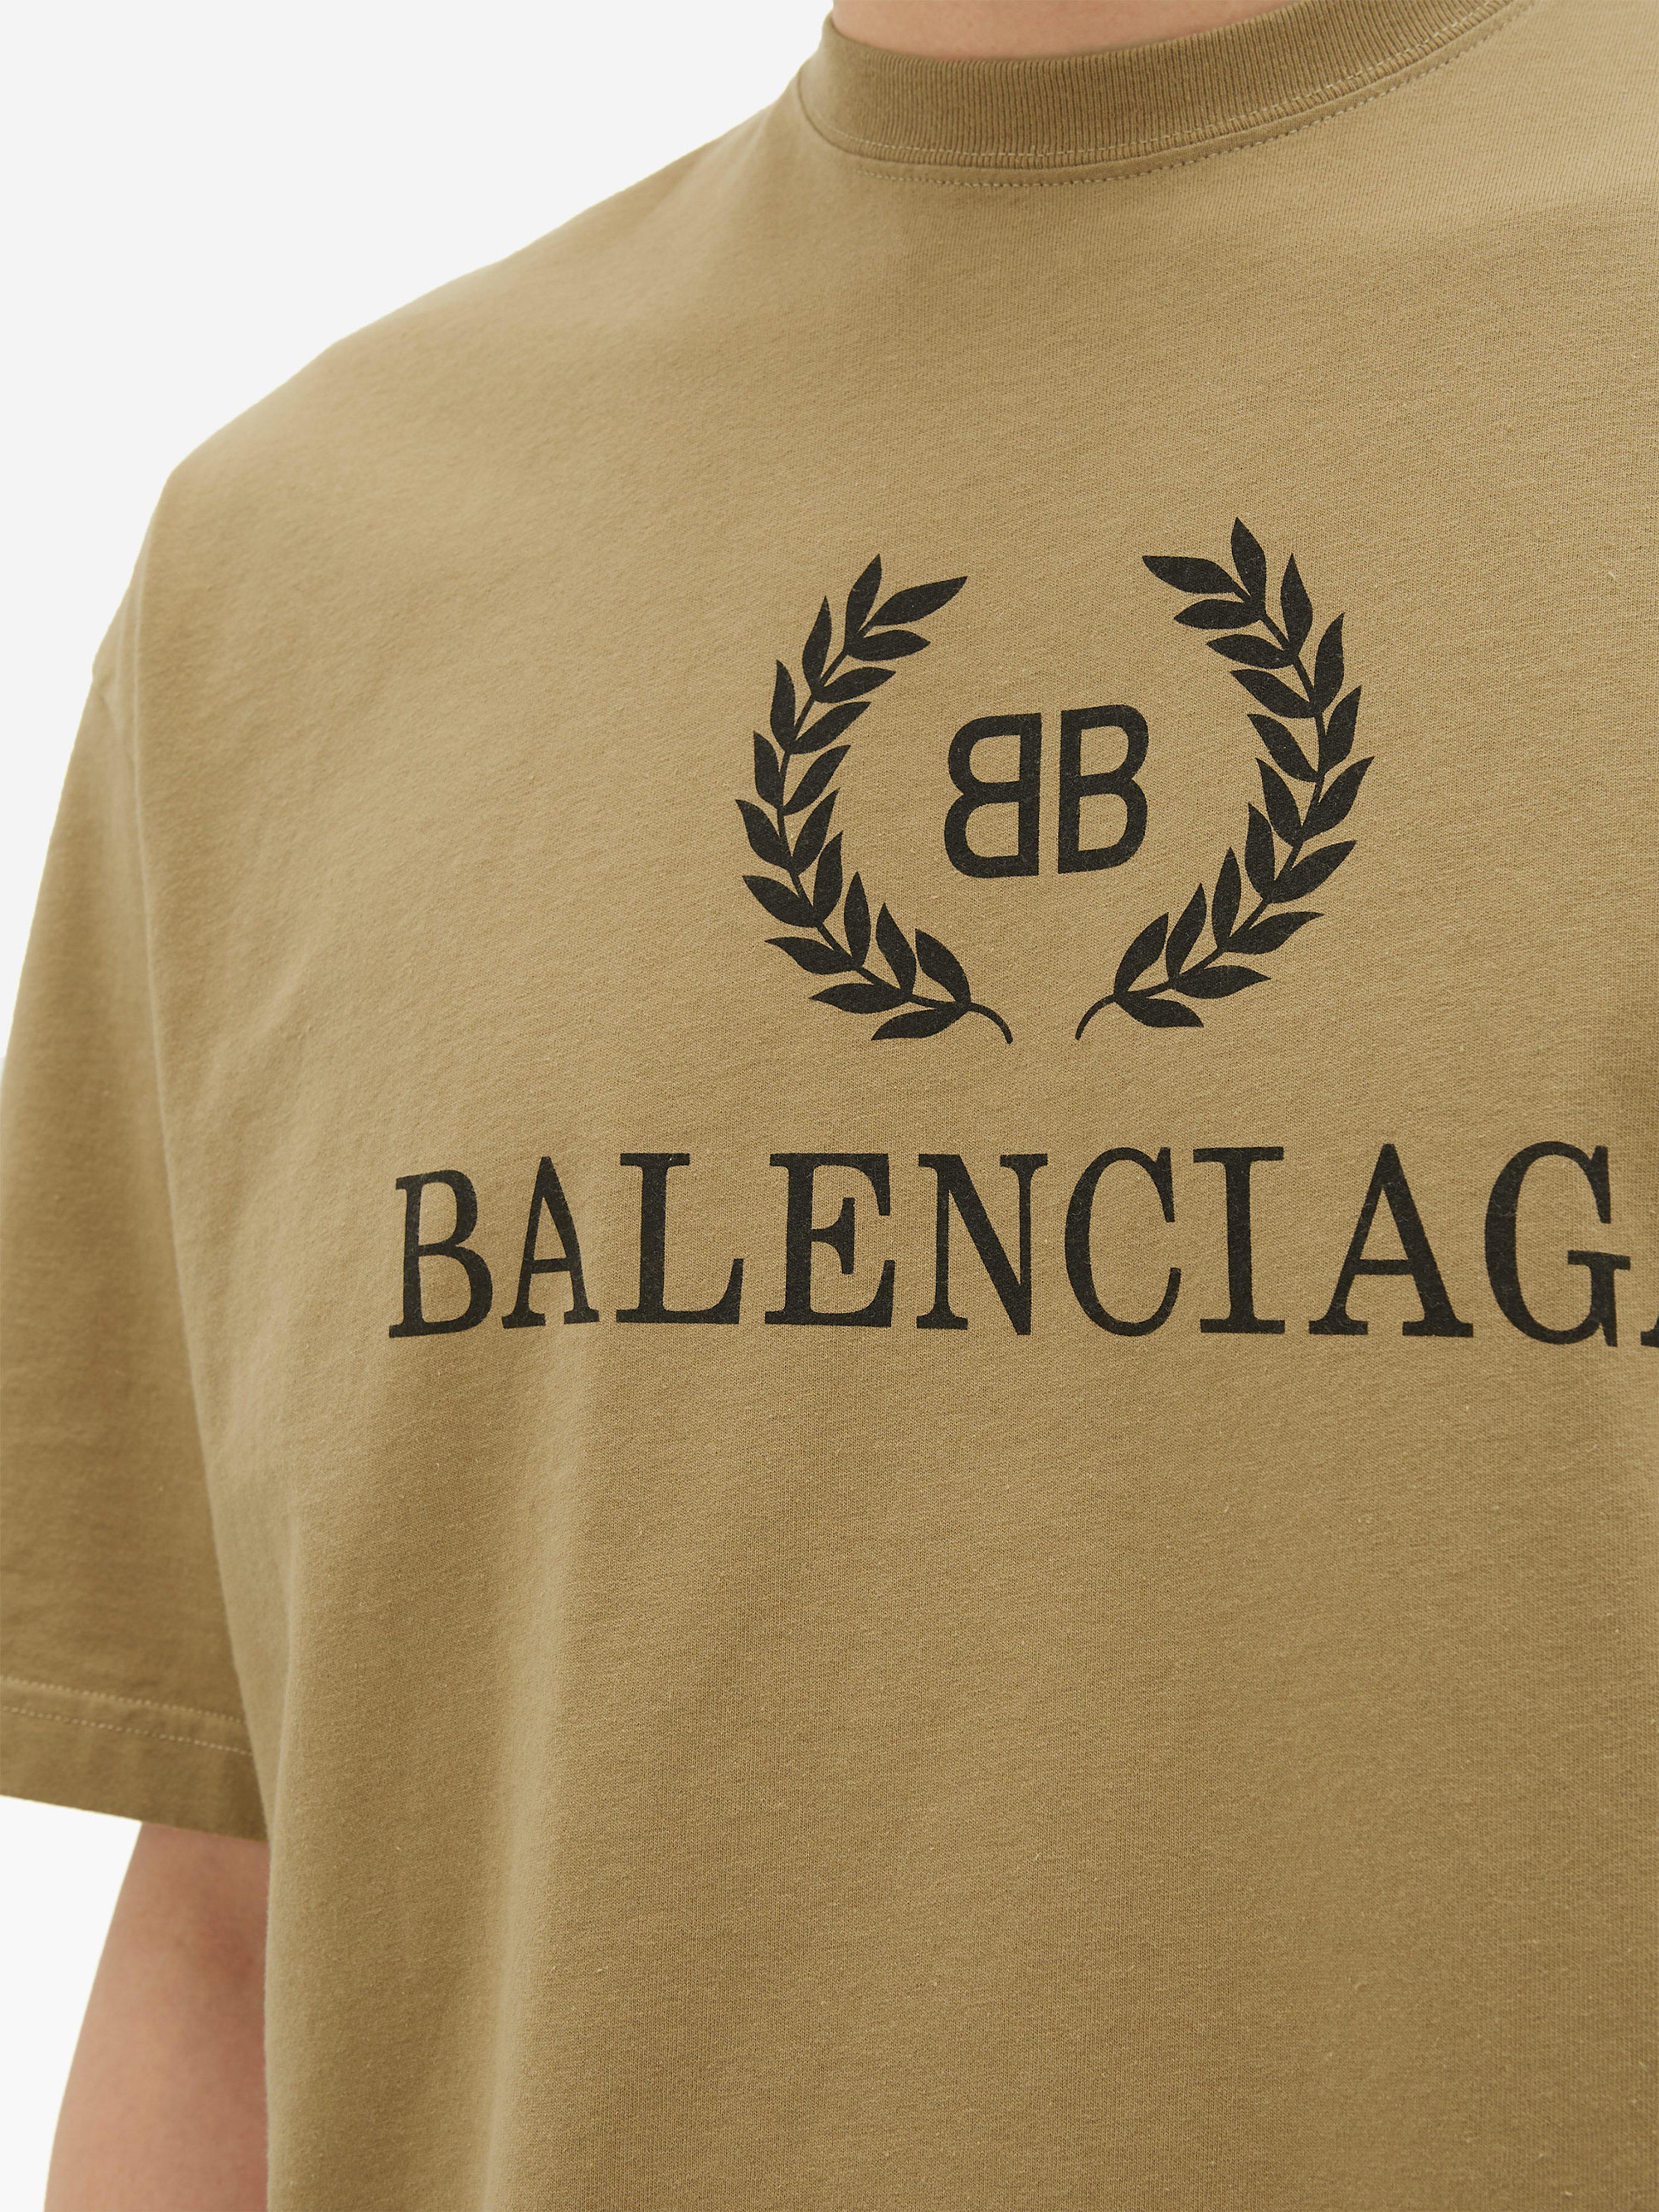 画像 Balenciaga T Shirt Beige - ファッション - ストック写真